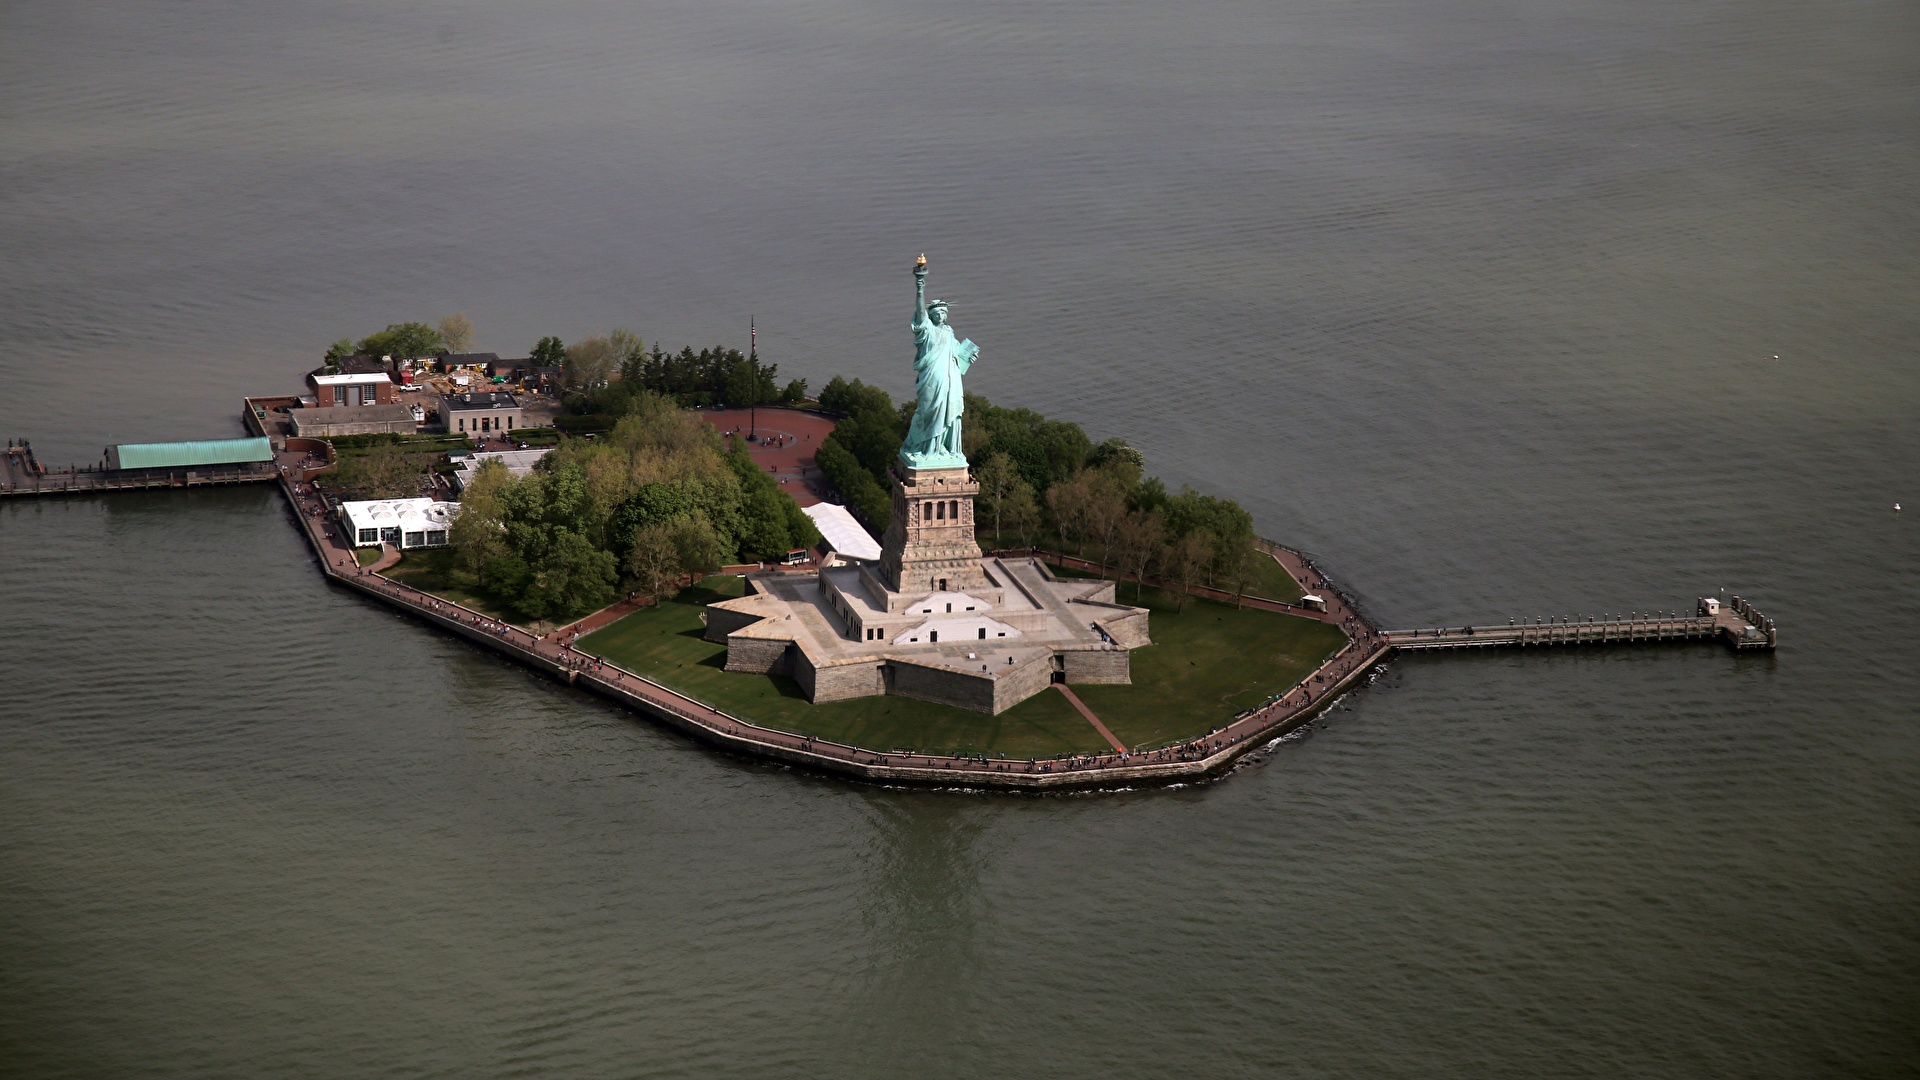 壁紙 19x1080 アメリカ合衆国 島 ニューヨーク 自由の女神像 上から 都市 ダウンロード 写真